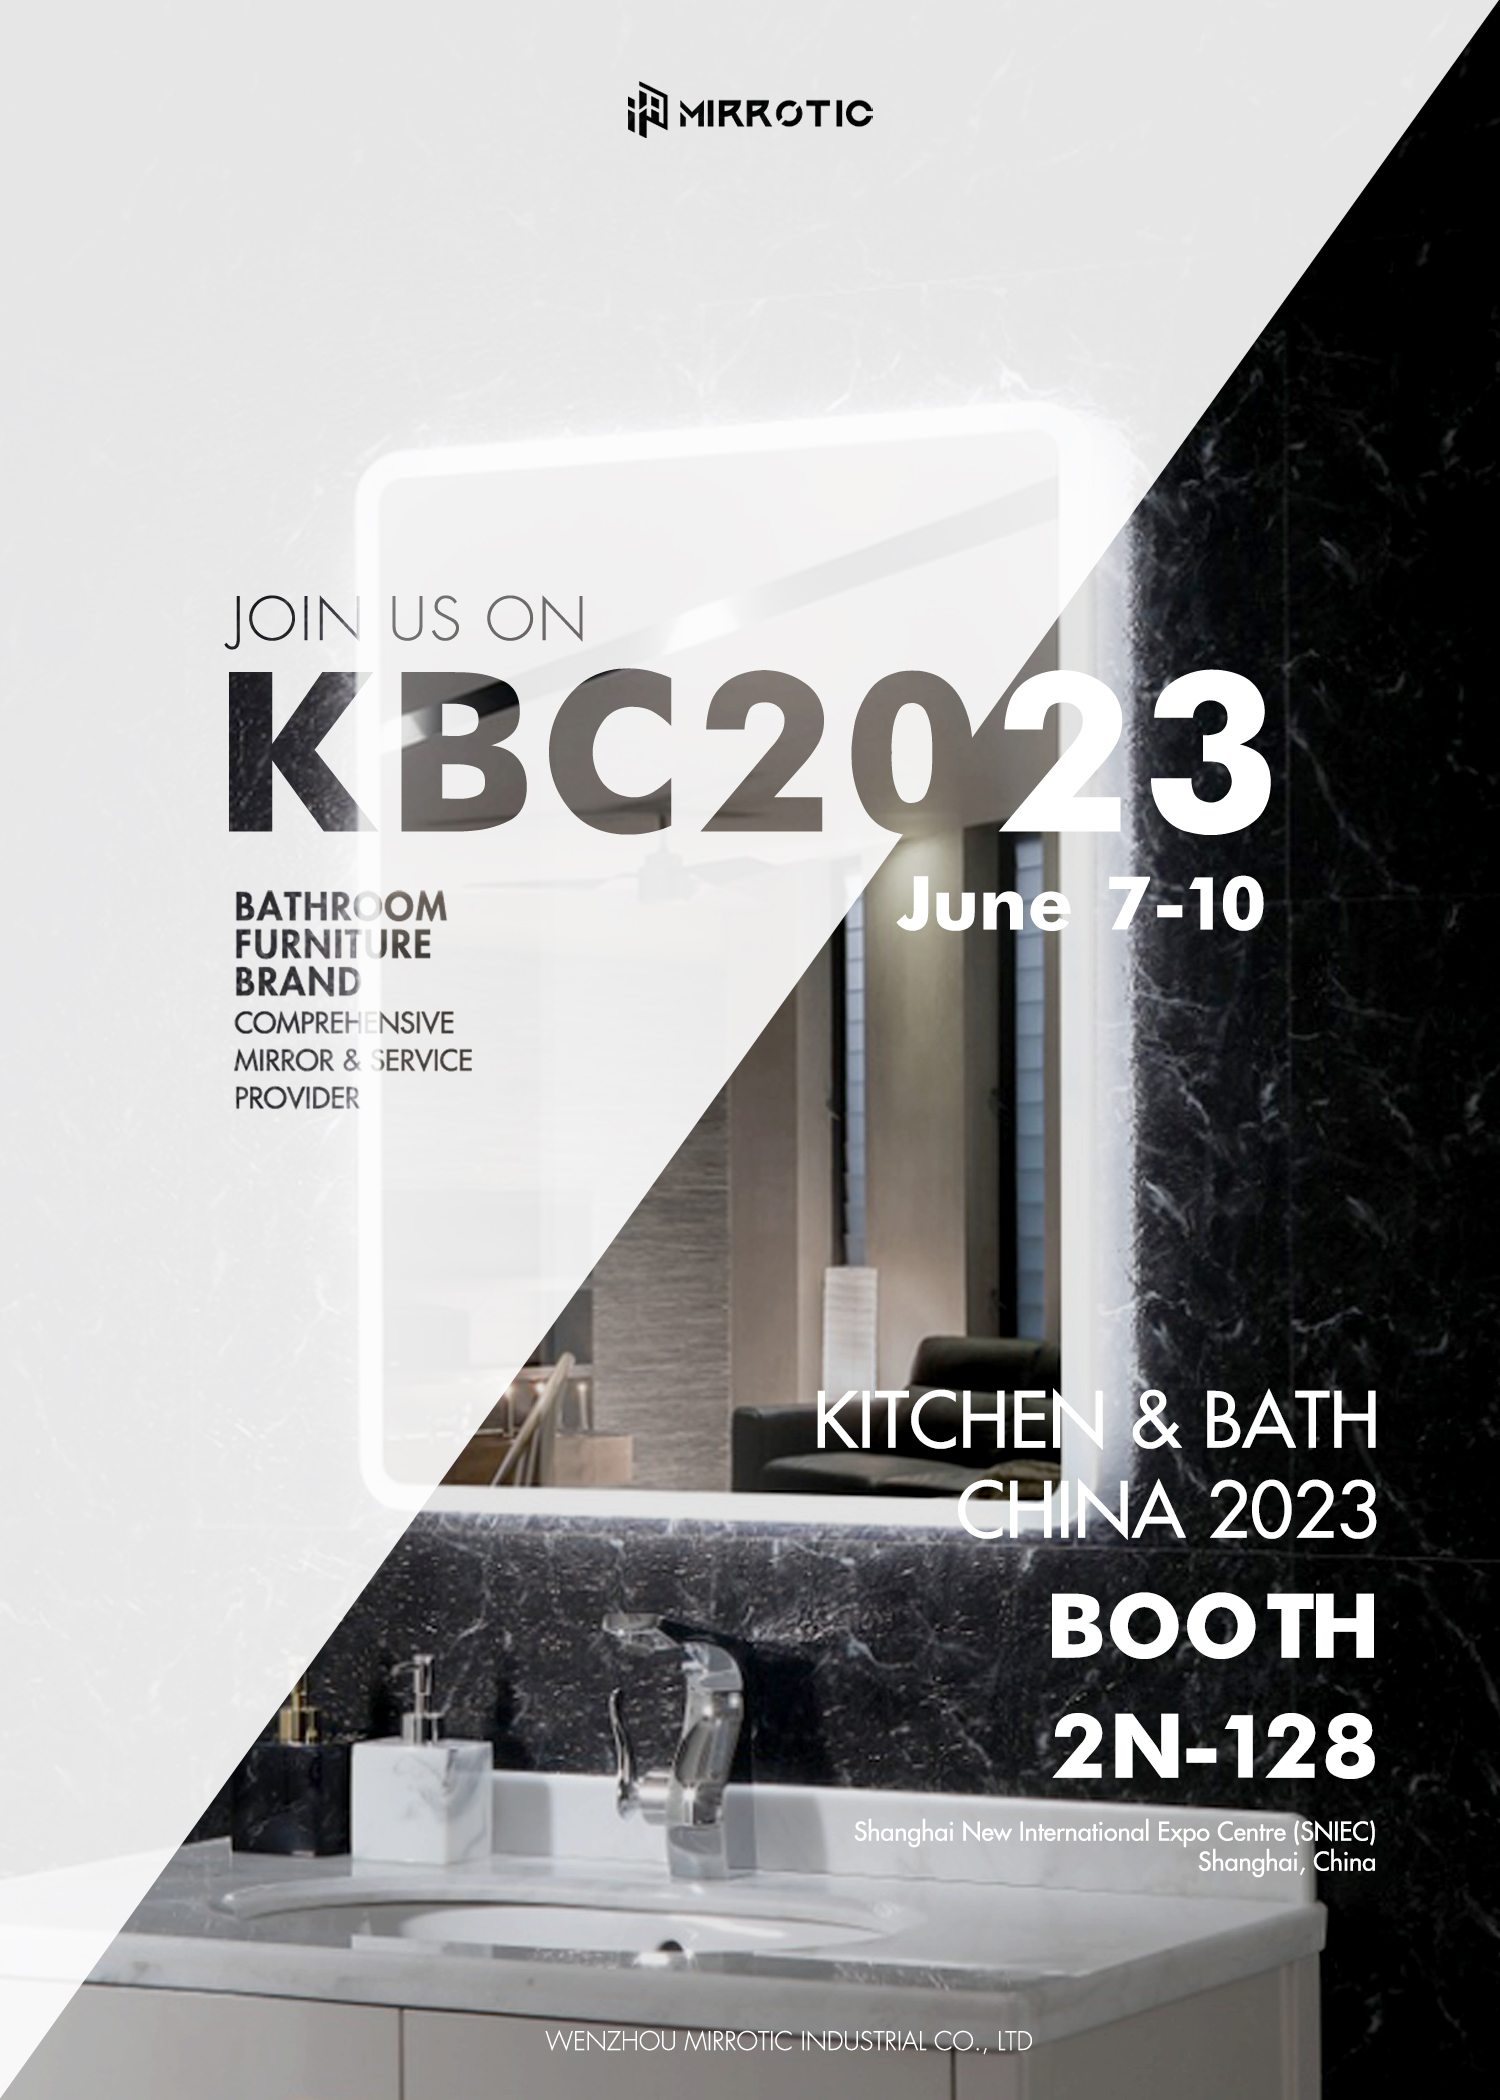 Выставка KBC2023 открыта, и мы приглашаем вас посетить наш стенд!